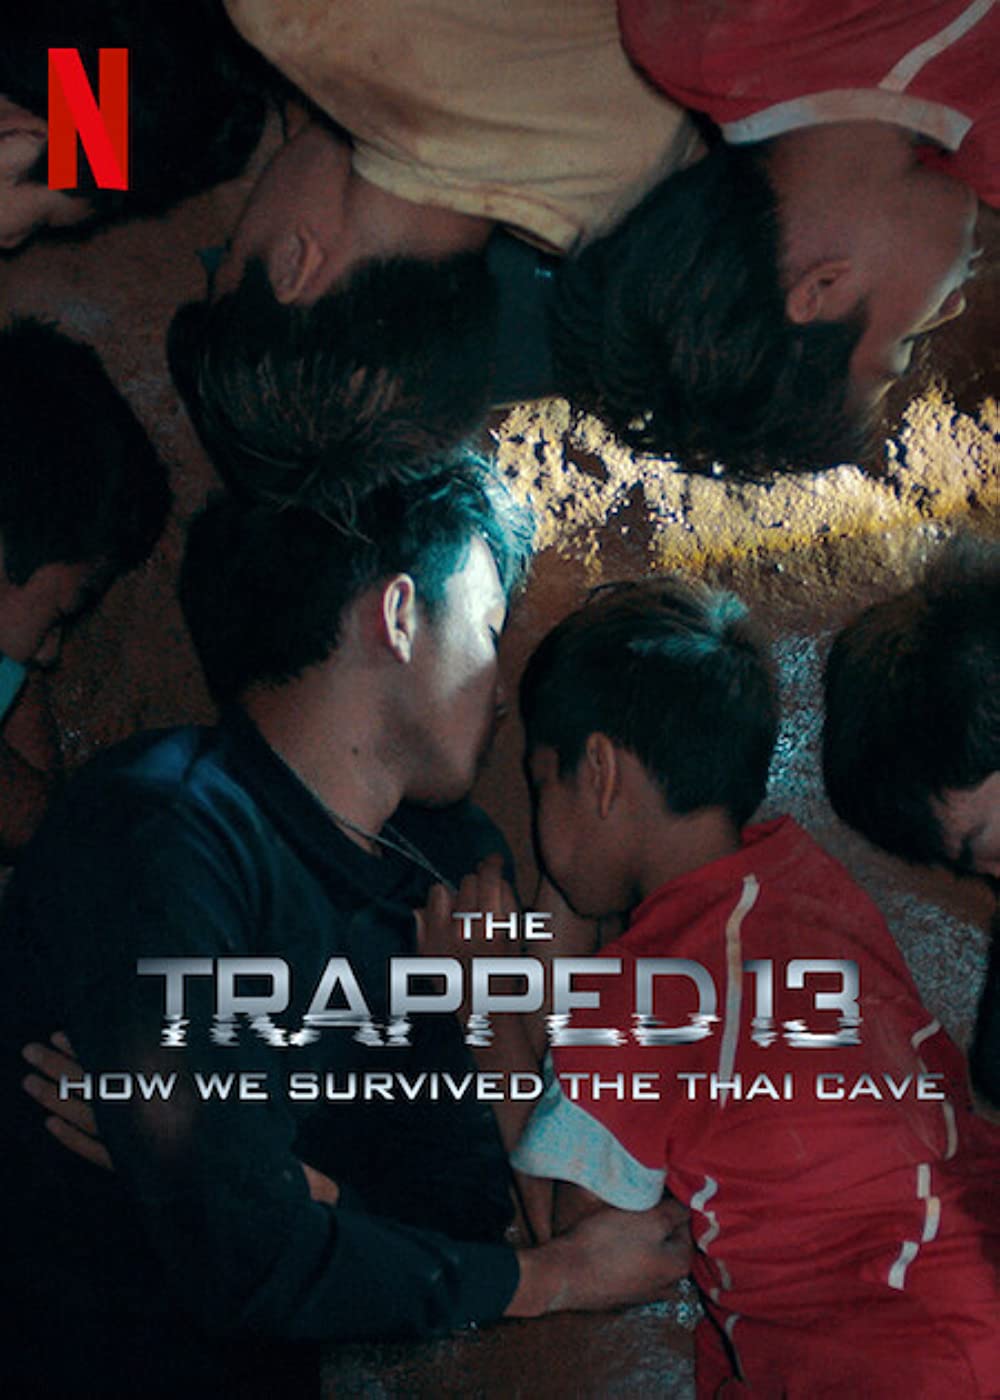 ดูหนังออนไลน์ฟรี The Trapped 13  How We Survived the Thai Cave 13 หมูป่า เรื่องเล่าจากในถ้ำ (2022) พากย์ไทย